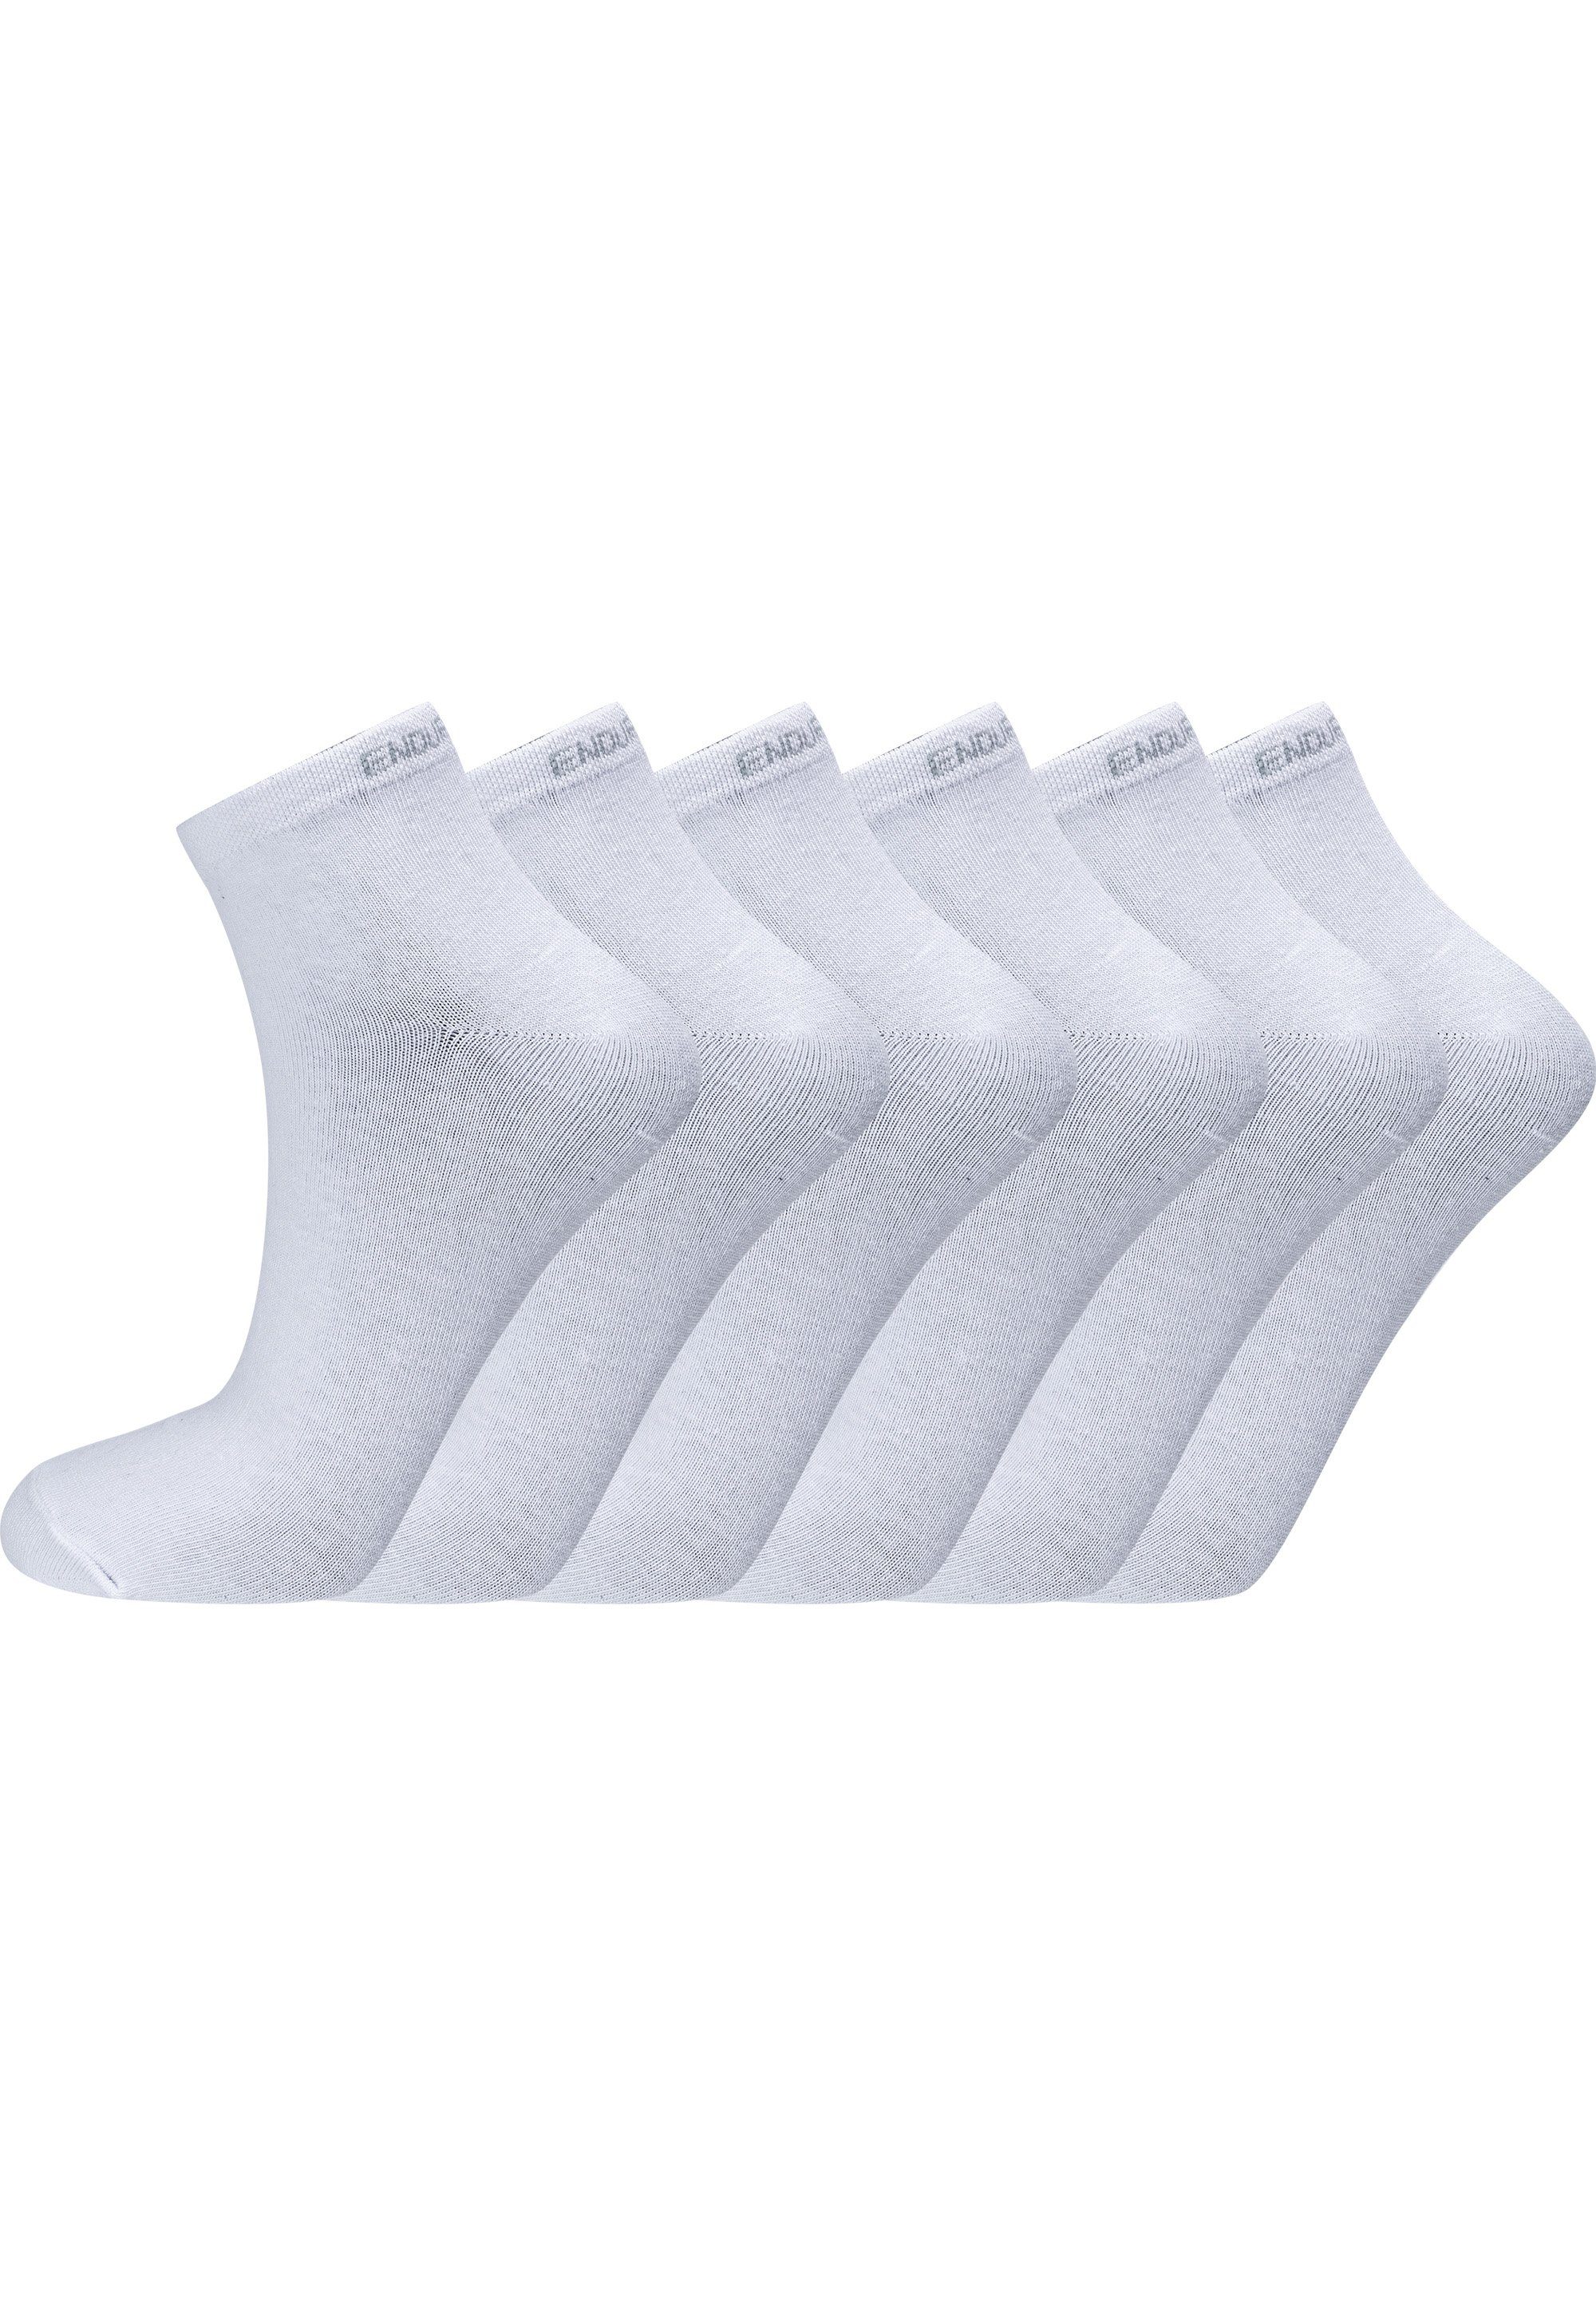 ENDURANCE Socken Ibi (6-Paar) mit sehr hohem Baumwolle-Anteil